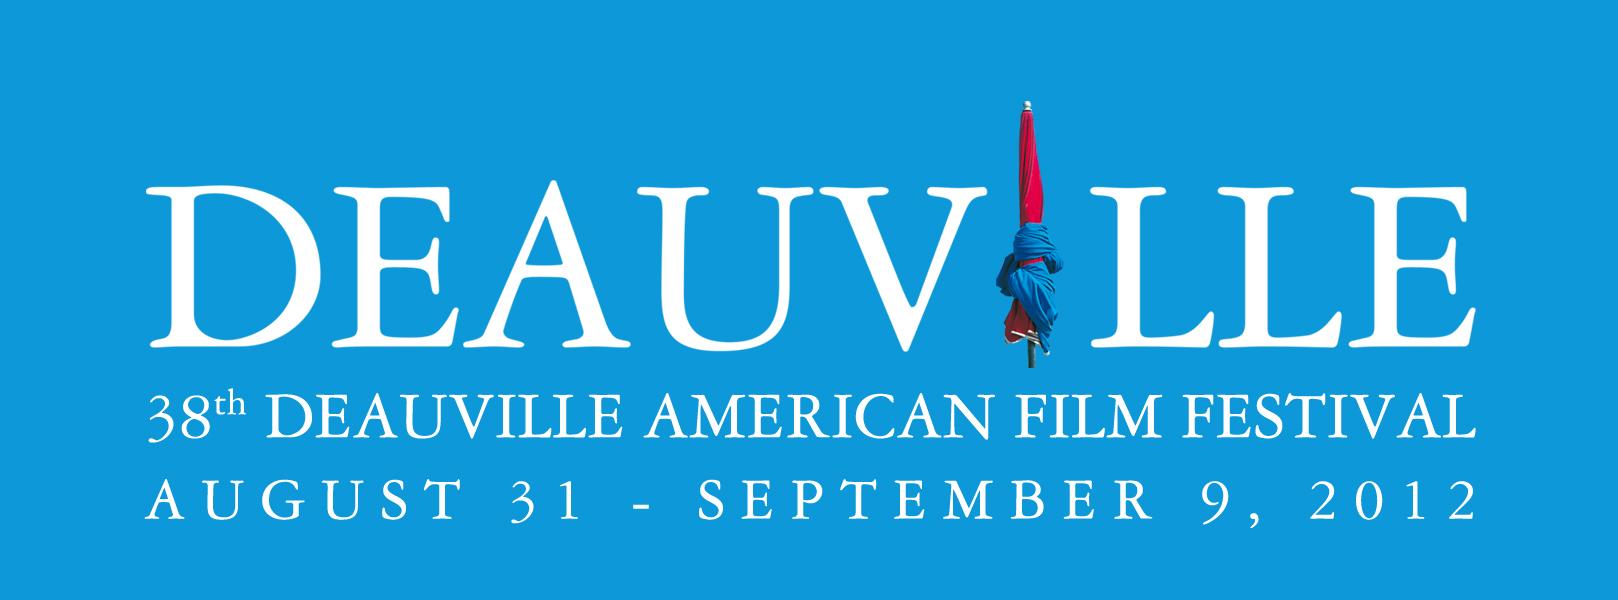 Festival du film américain de Deauville # Jour 1